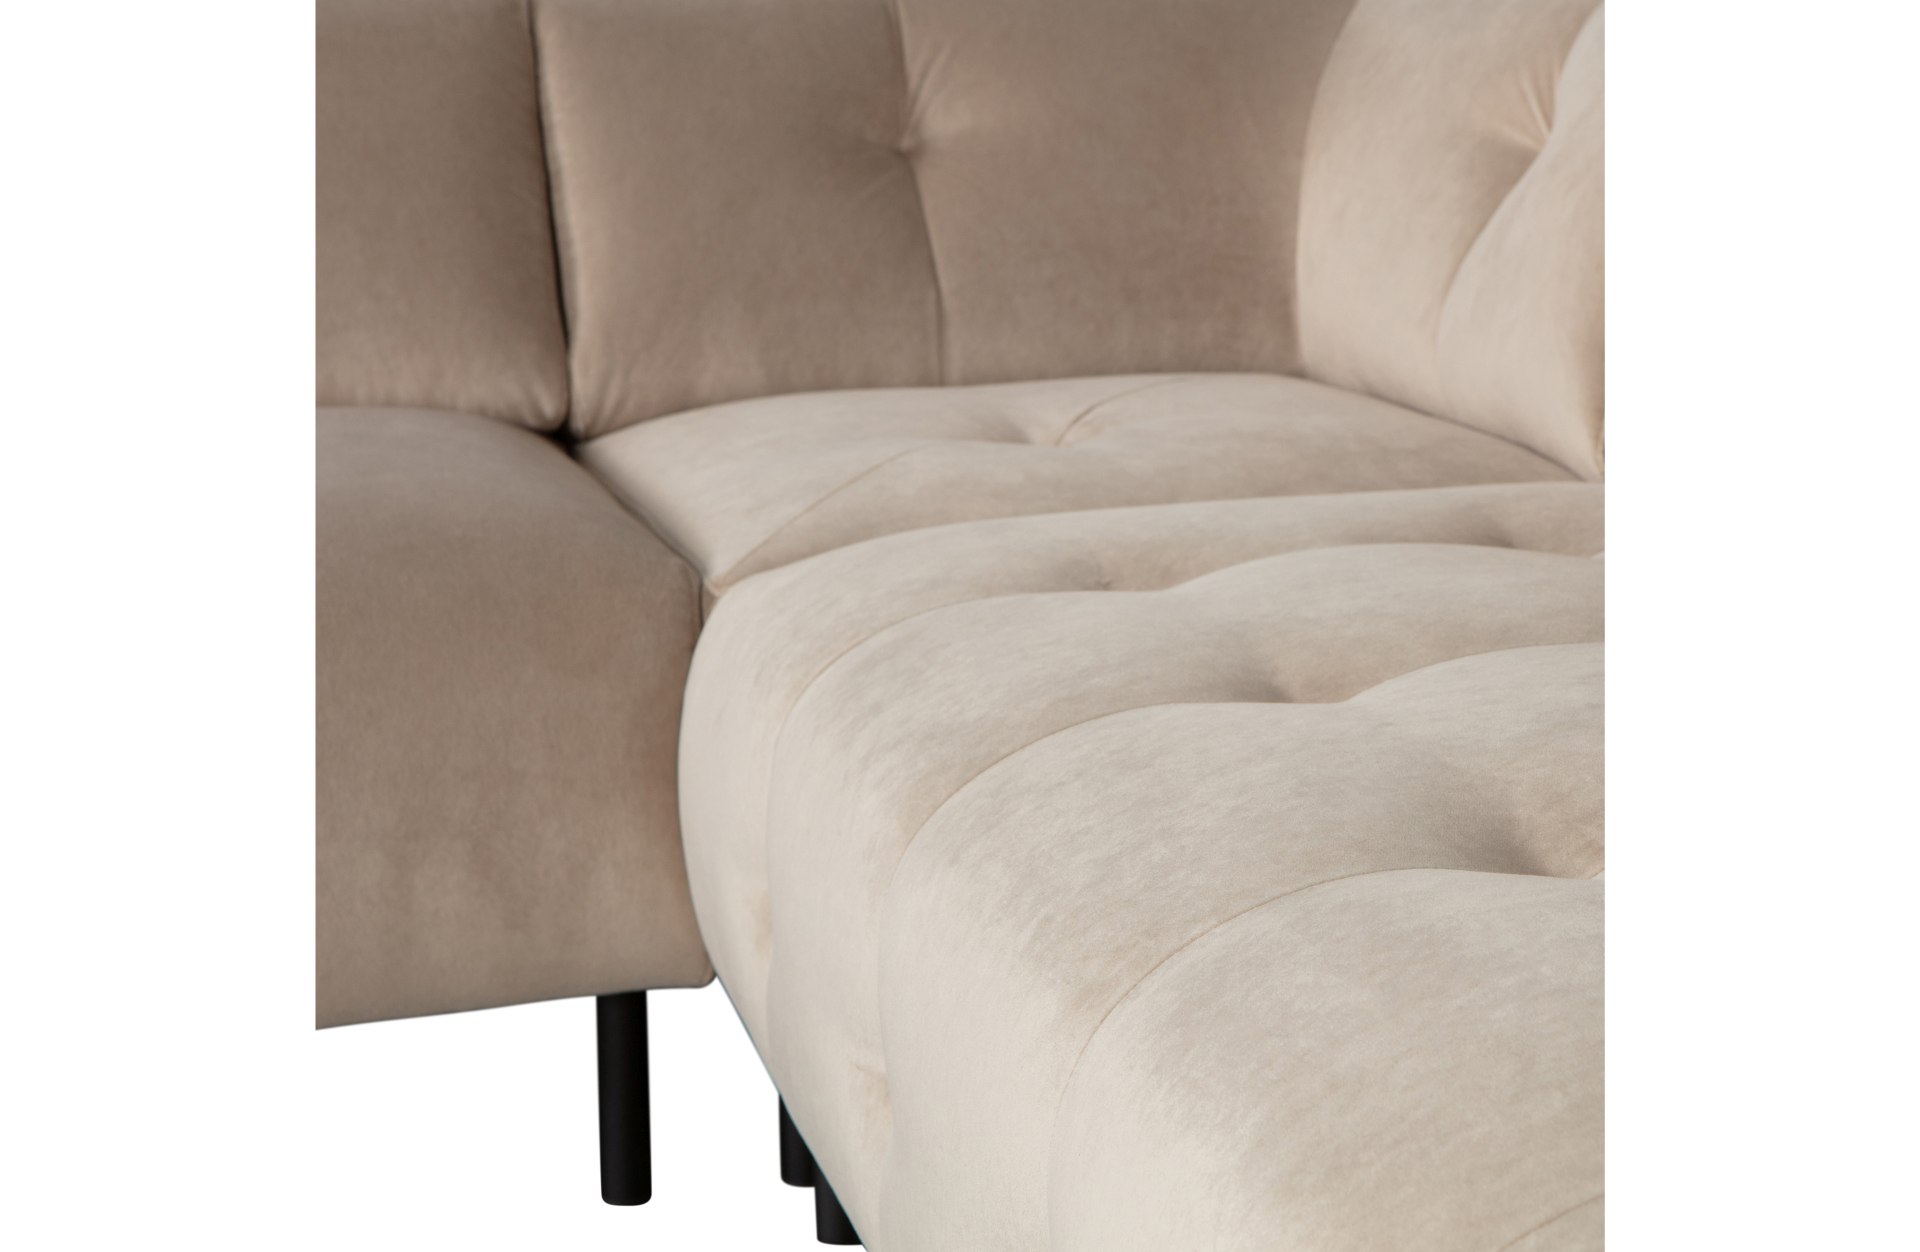 Das Ecksofa Lloyd überzeugt mit seinem modernem Design. Gefertigt wurde das Sofa aus einem Samt Bezug, welcher einen Sand Farbton besitzt. Die Beine sind aus Metall und sind schwarz.